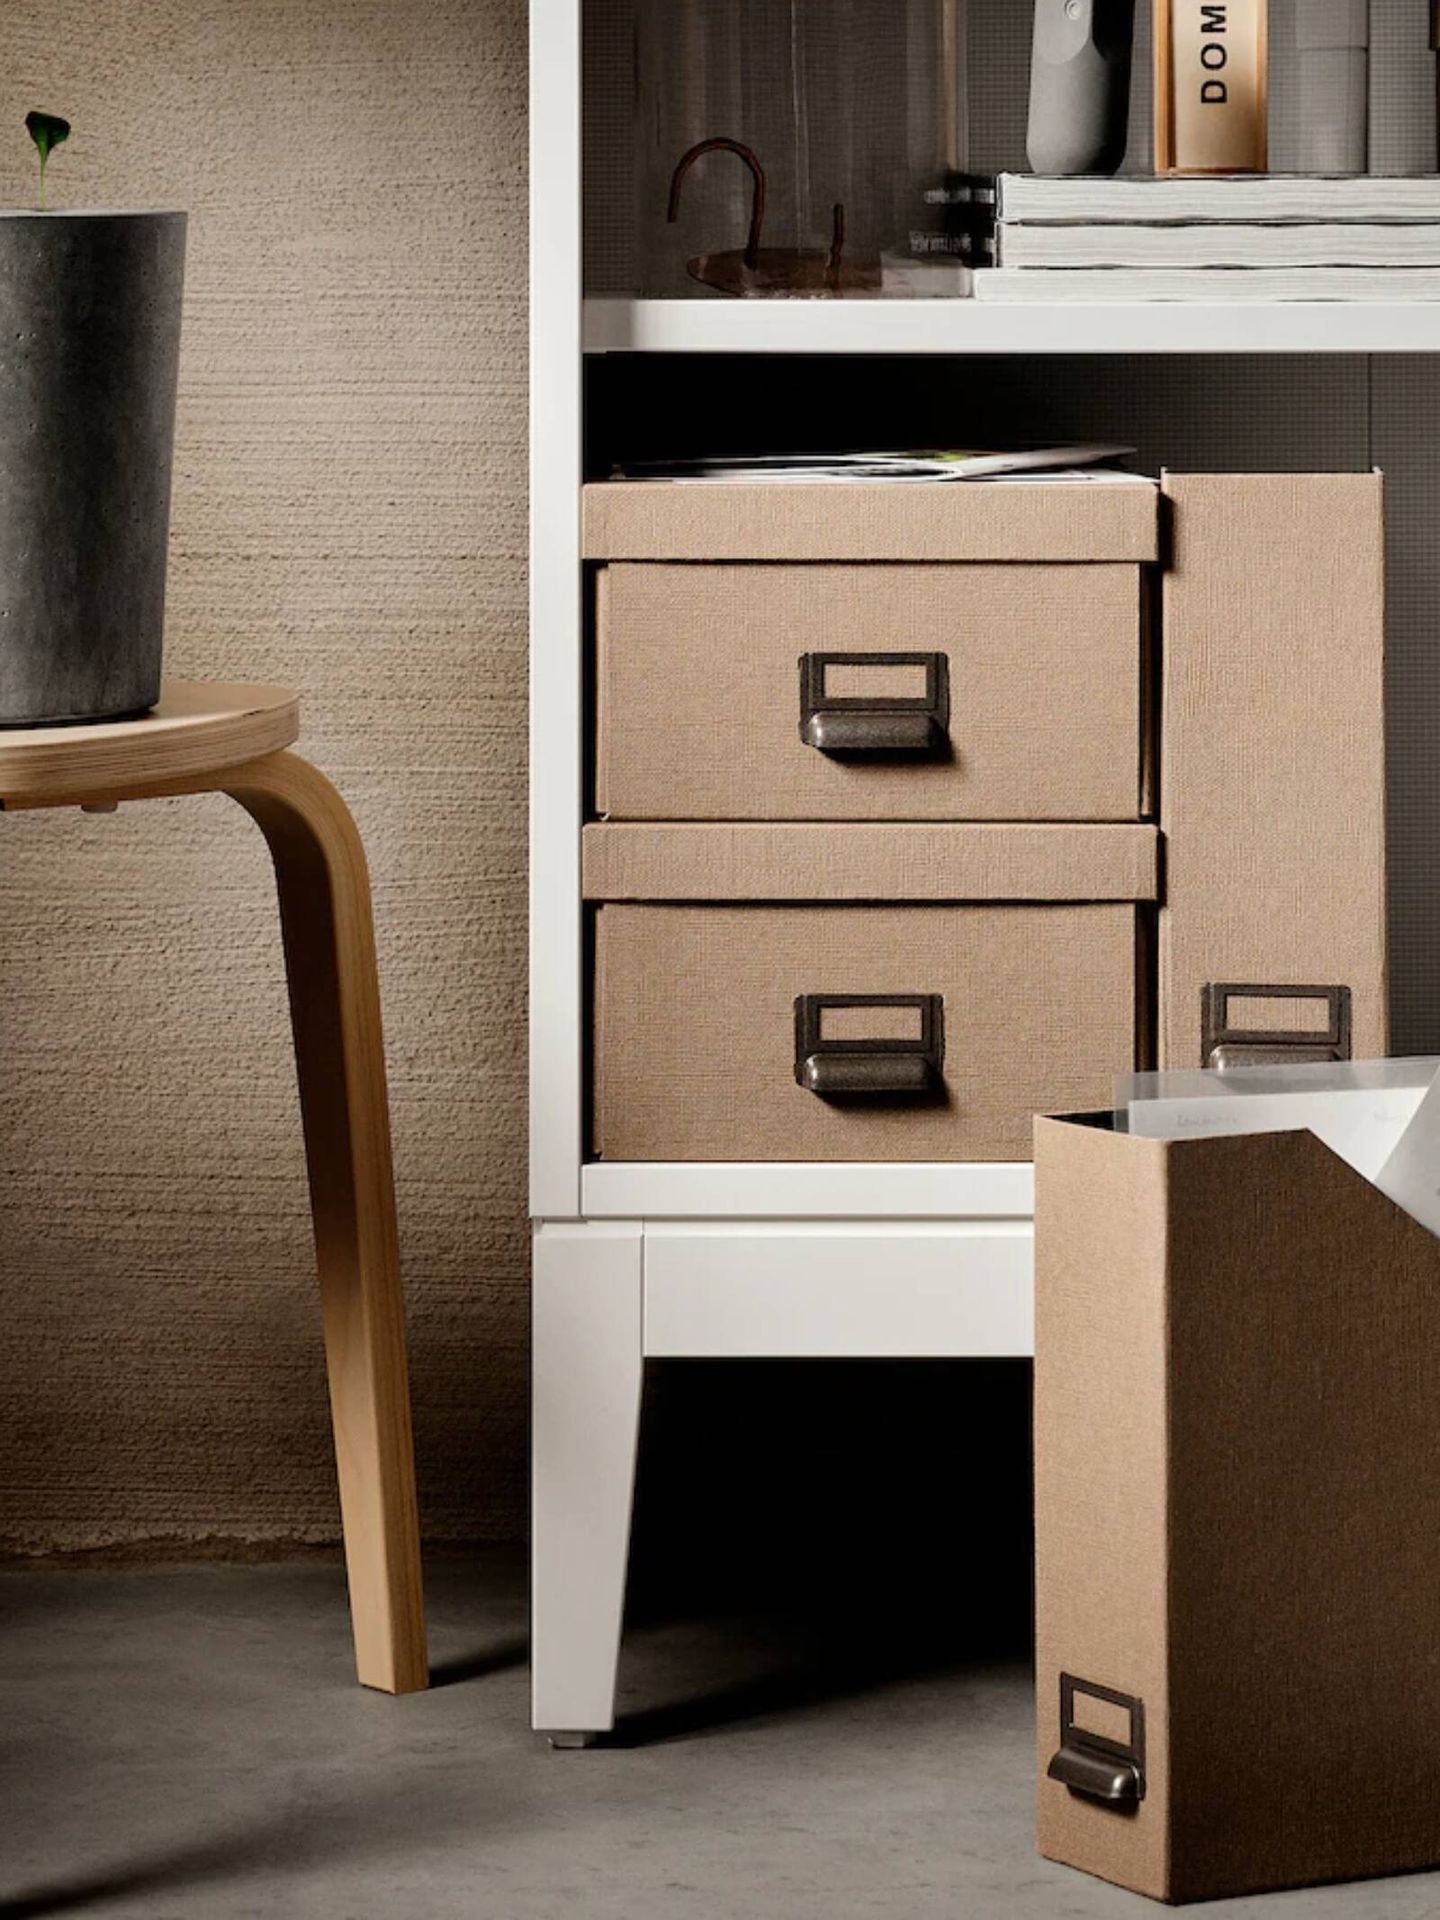 Esta estantería es el nuevo mueble de Ikea ideal para salones pequeños. (Cortesía)